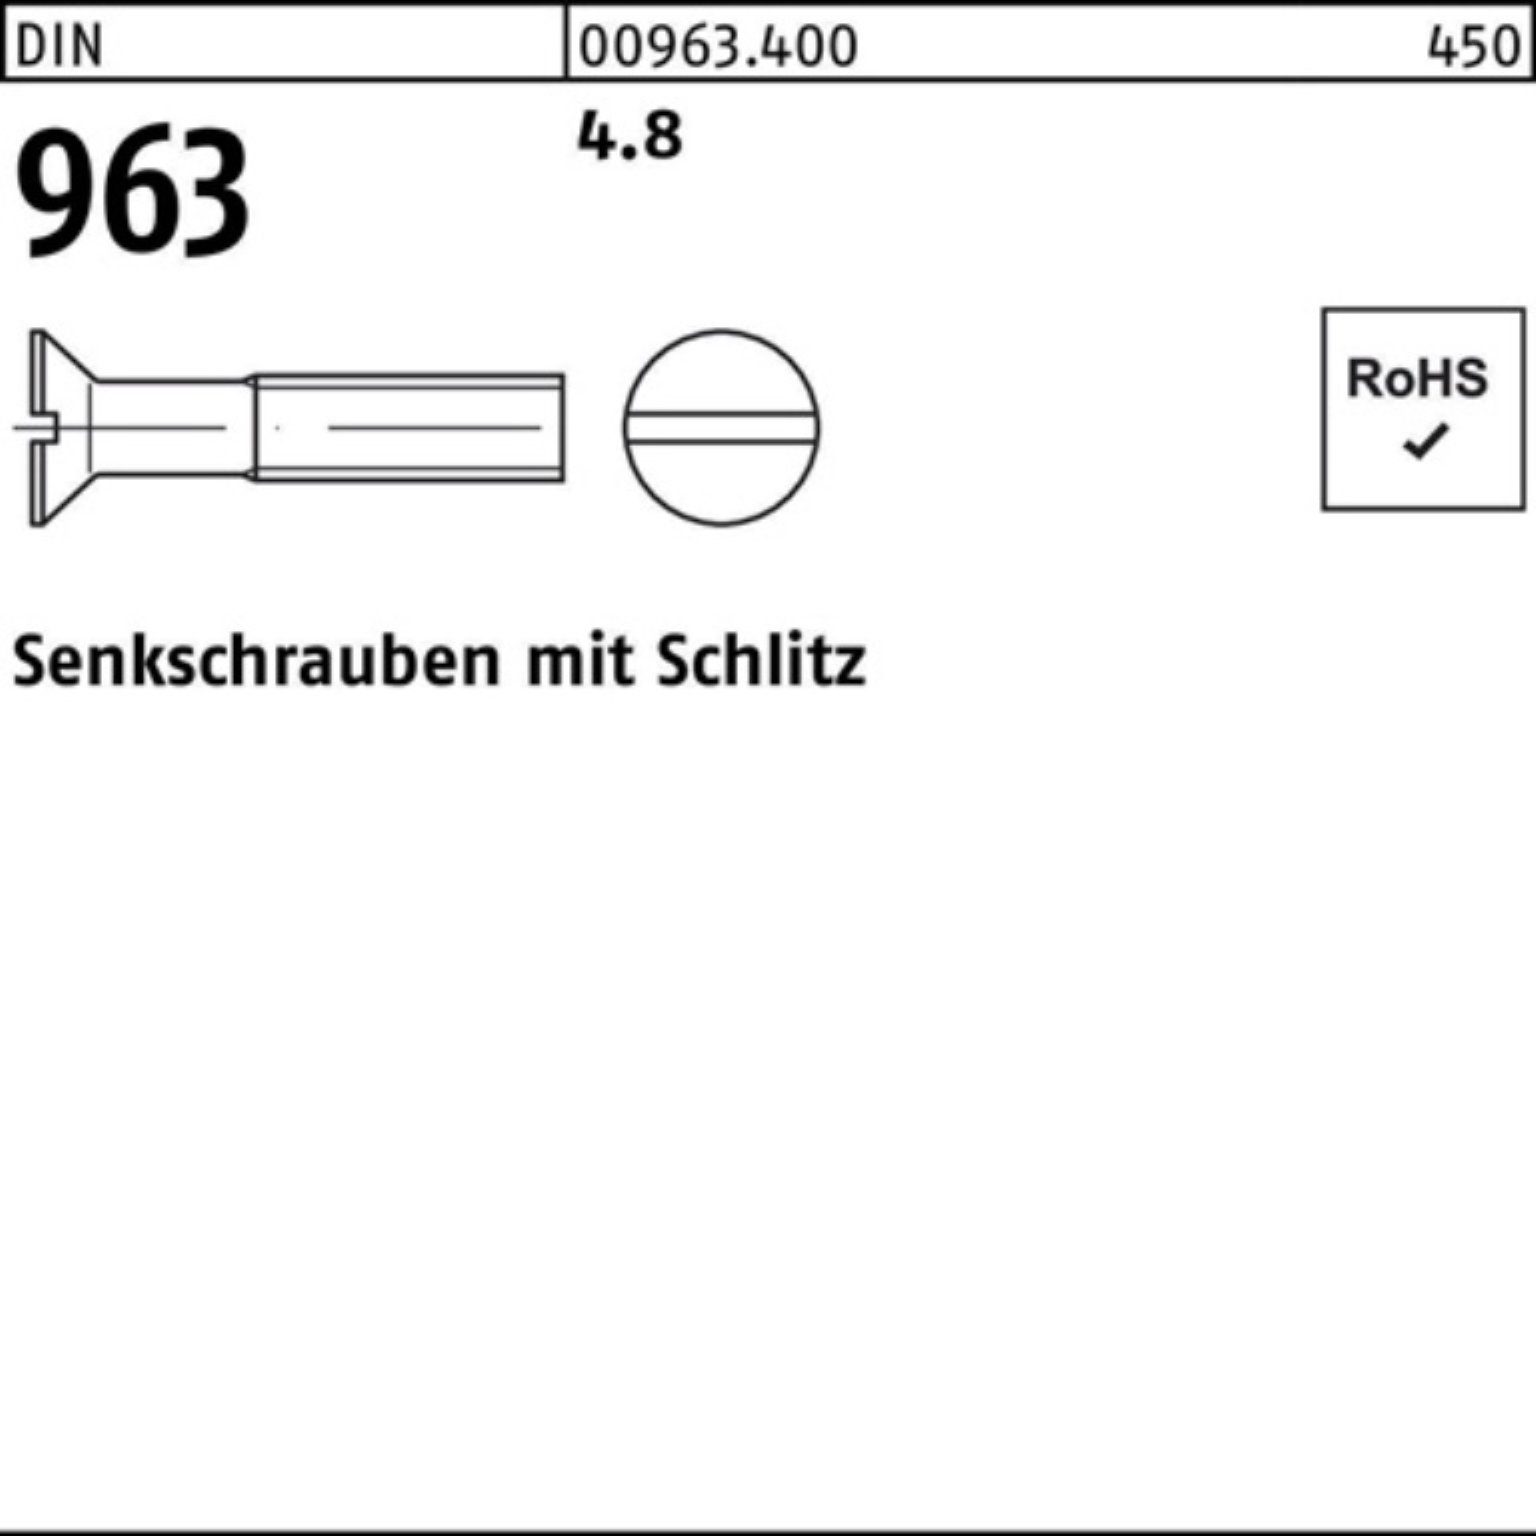 Reyher Senkschraube 200er Pack Senkschraube Stück DIN 4.8 963 M12x Schlitz 963 30 DIN 200